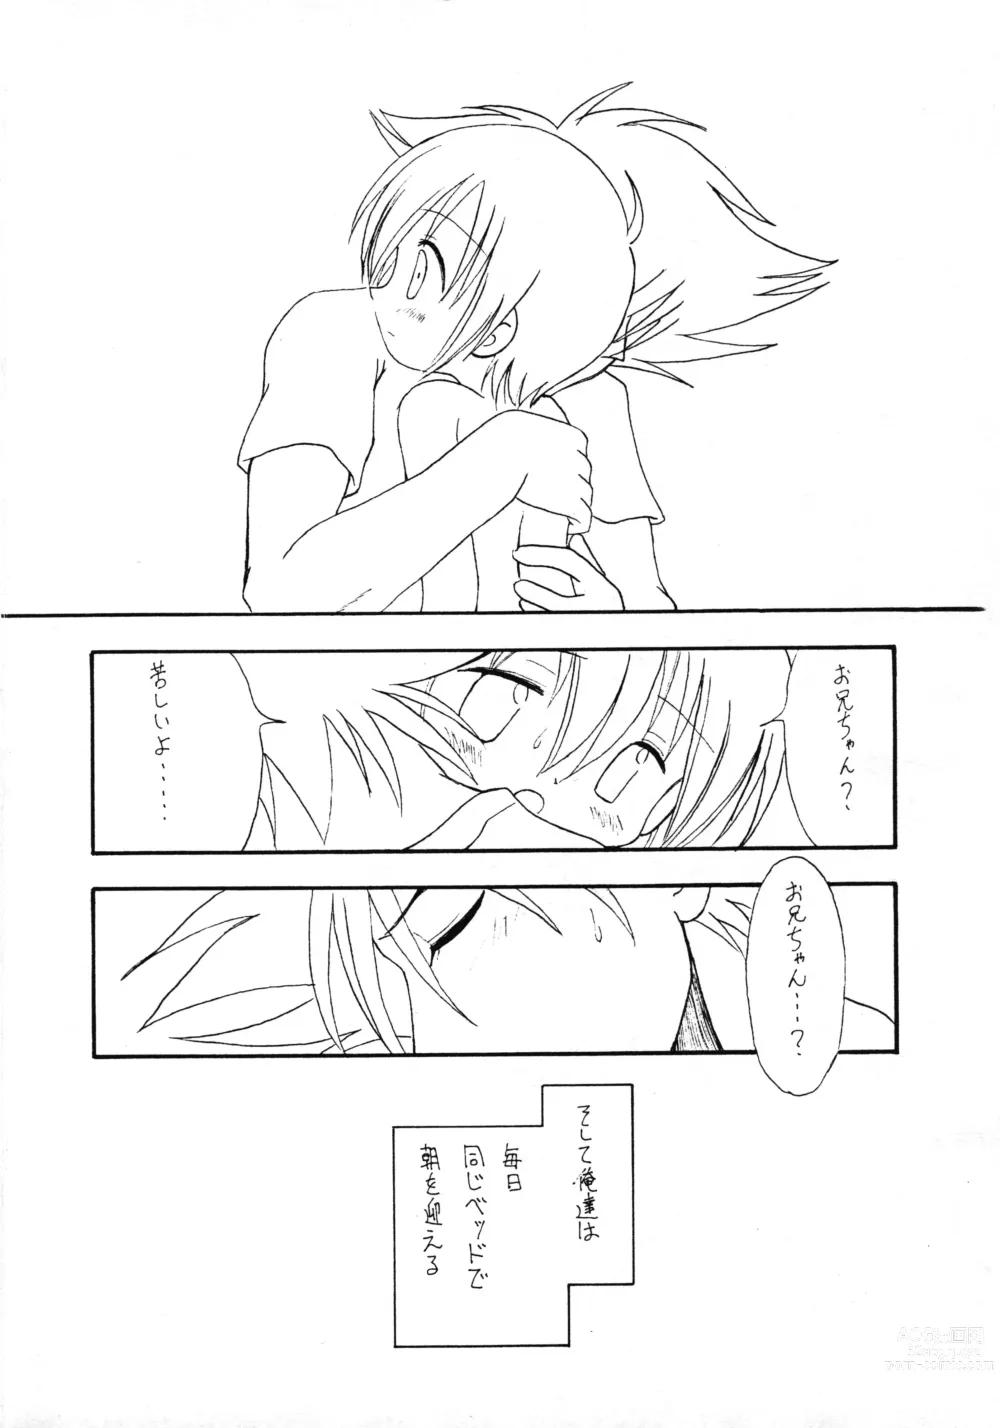 Page 16 of doujinshi Harujion